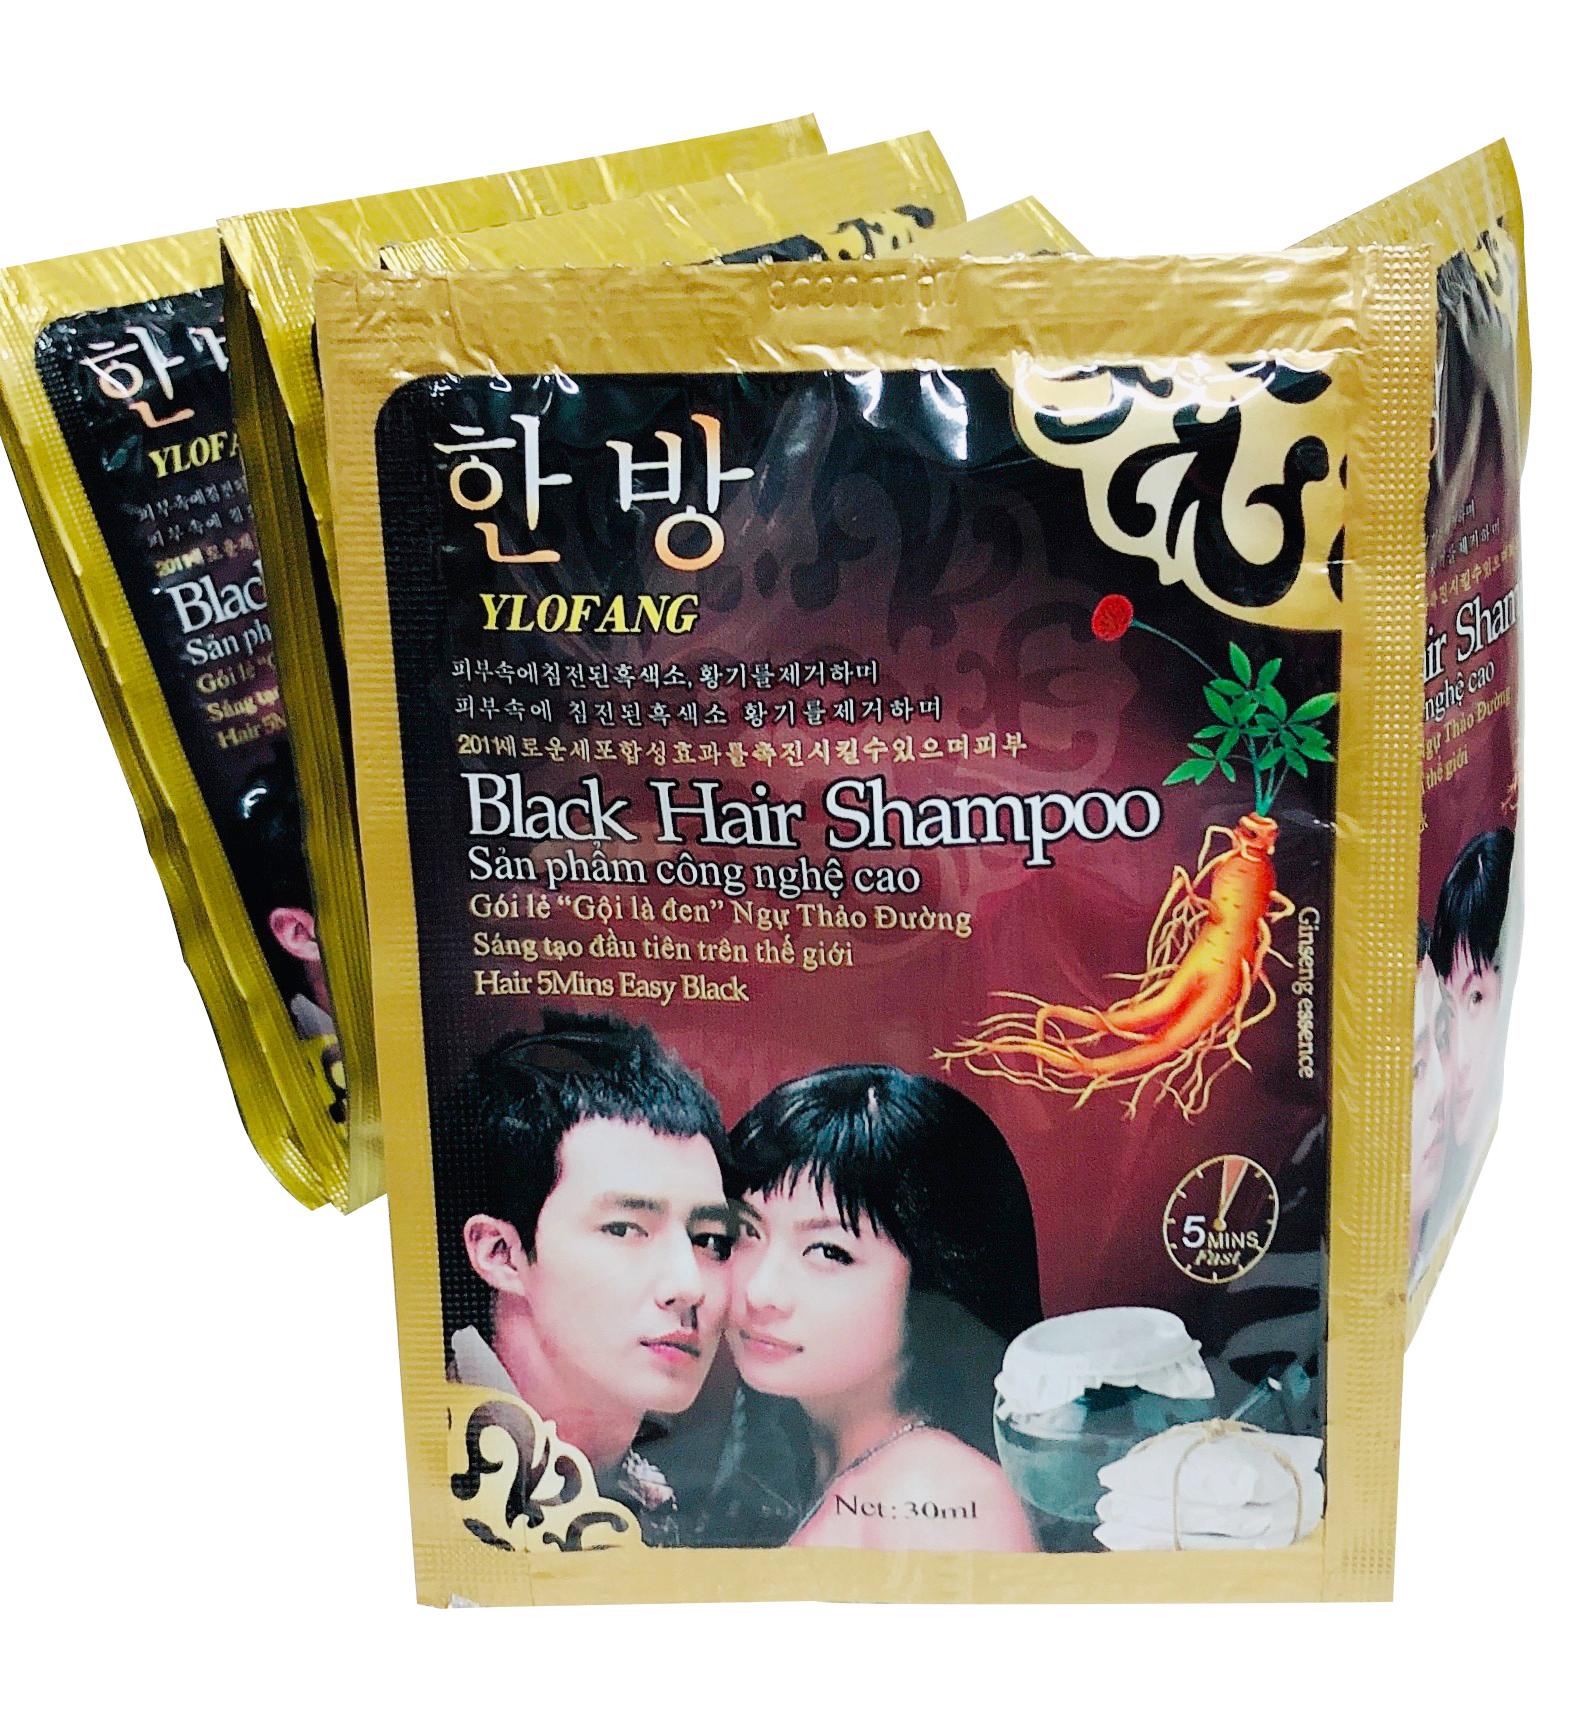 Gói Dầu Gội Nhuộm Đen Tóc Black Hair Shampoo Hàn Quốc - không mùi hôi